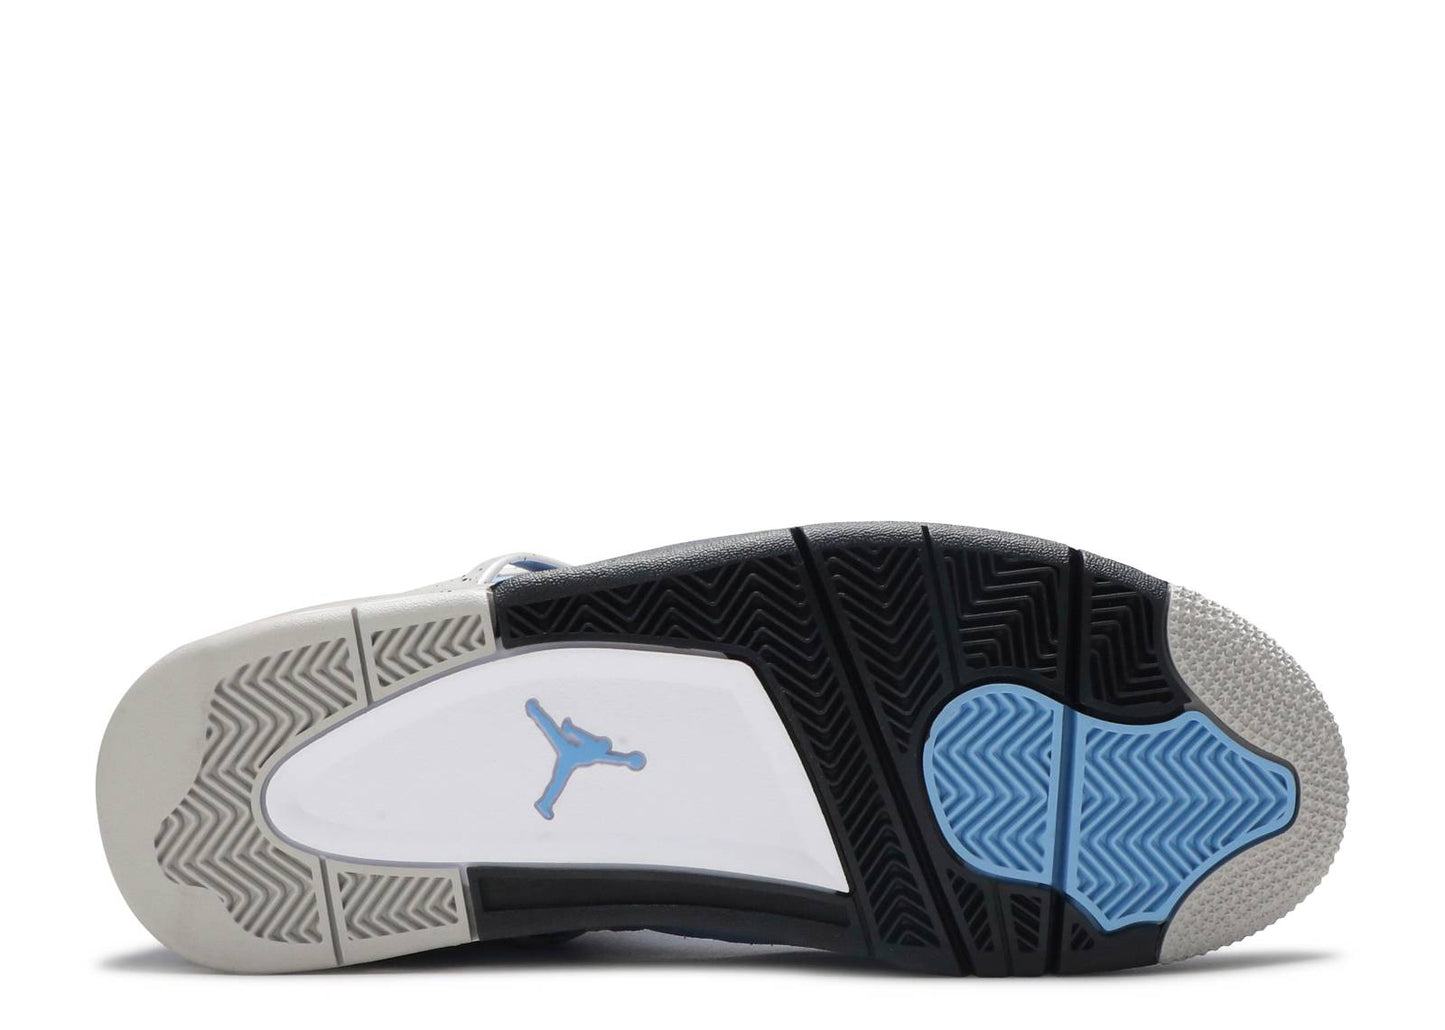 Air Jordan 4 Retro "University Blue"